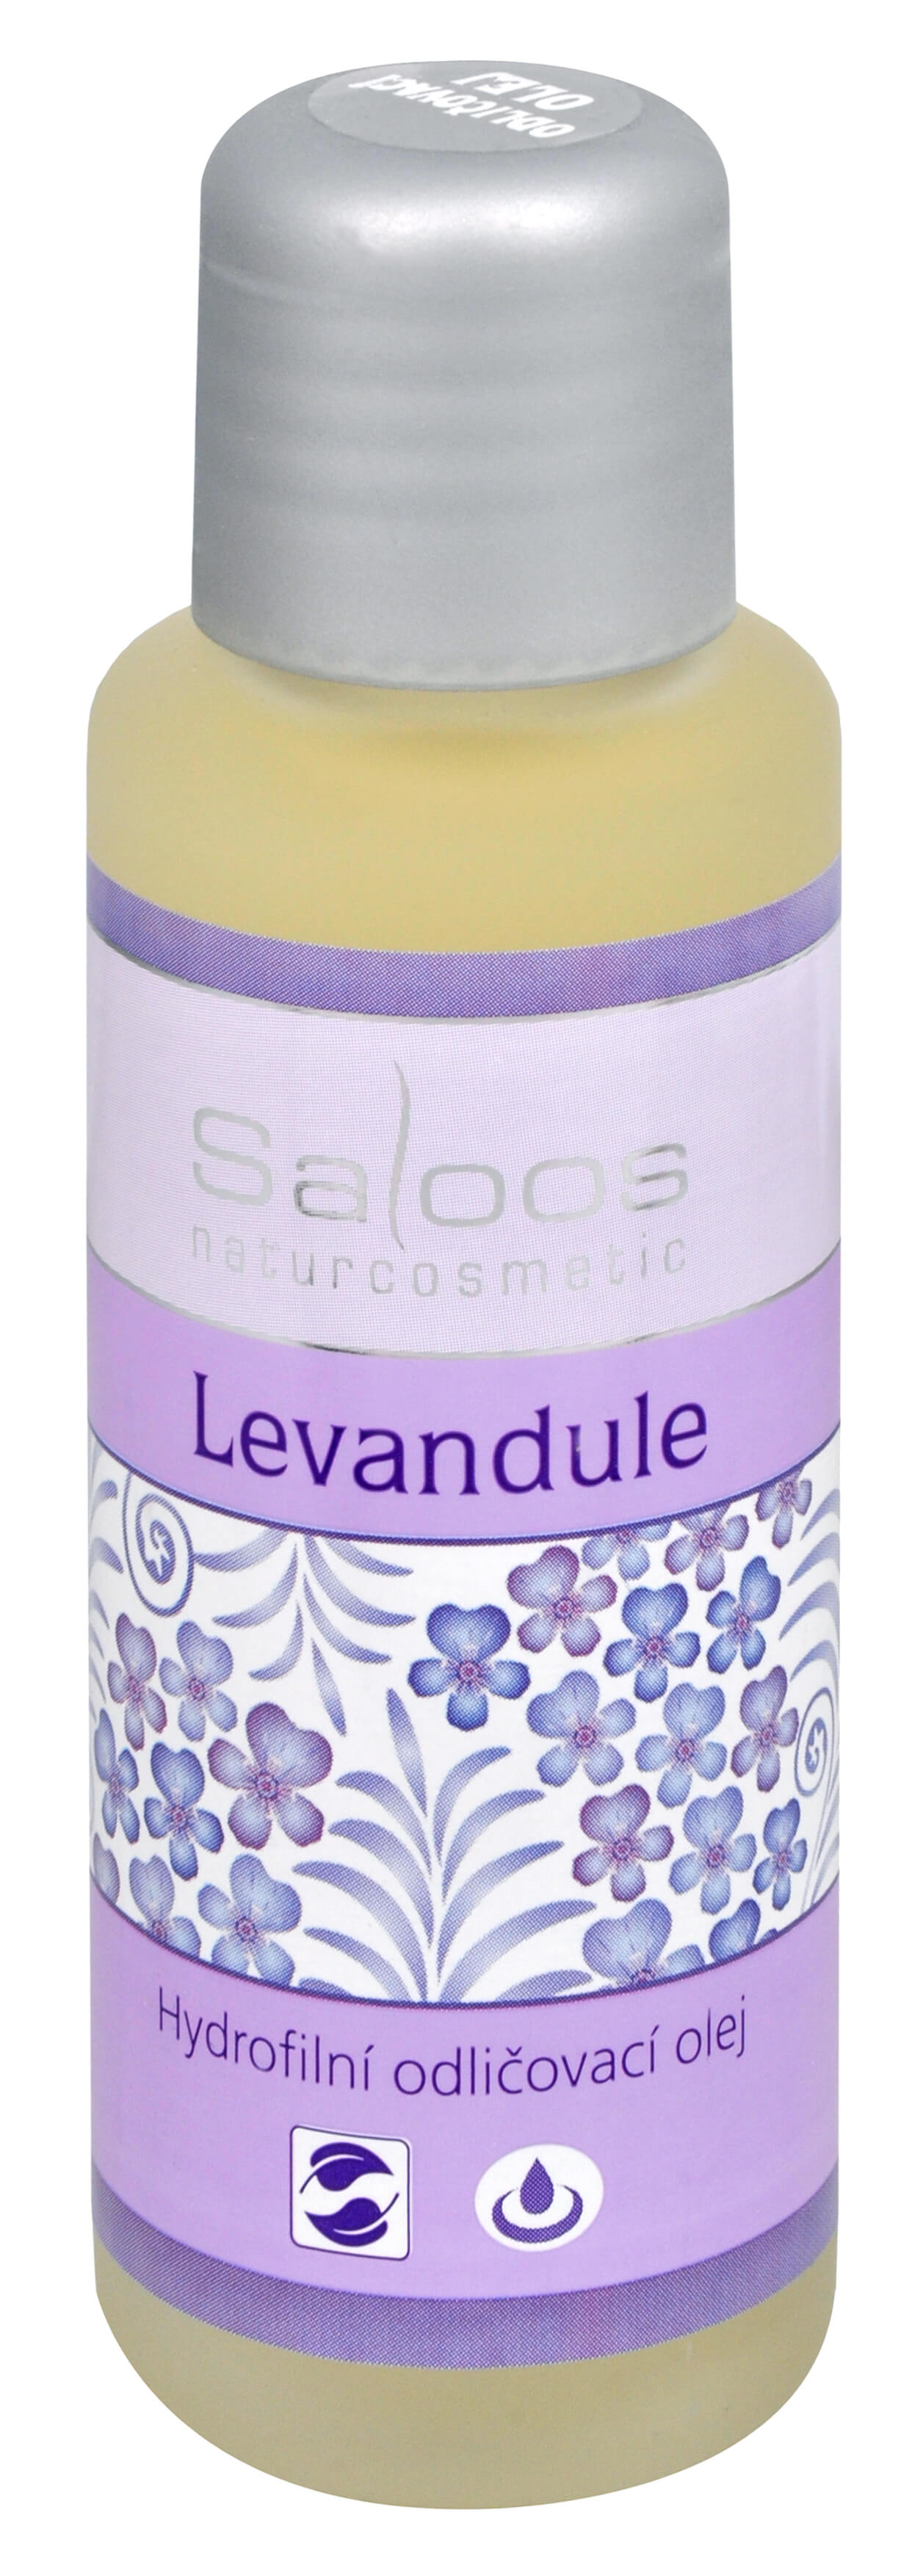 Saloos Hydrofilní odličovací olej - Levandule 200 ml